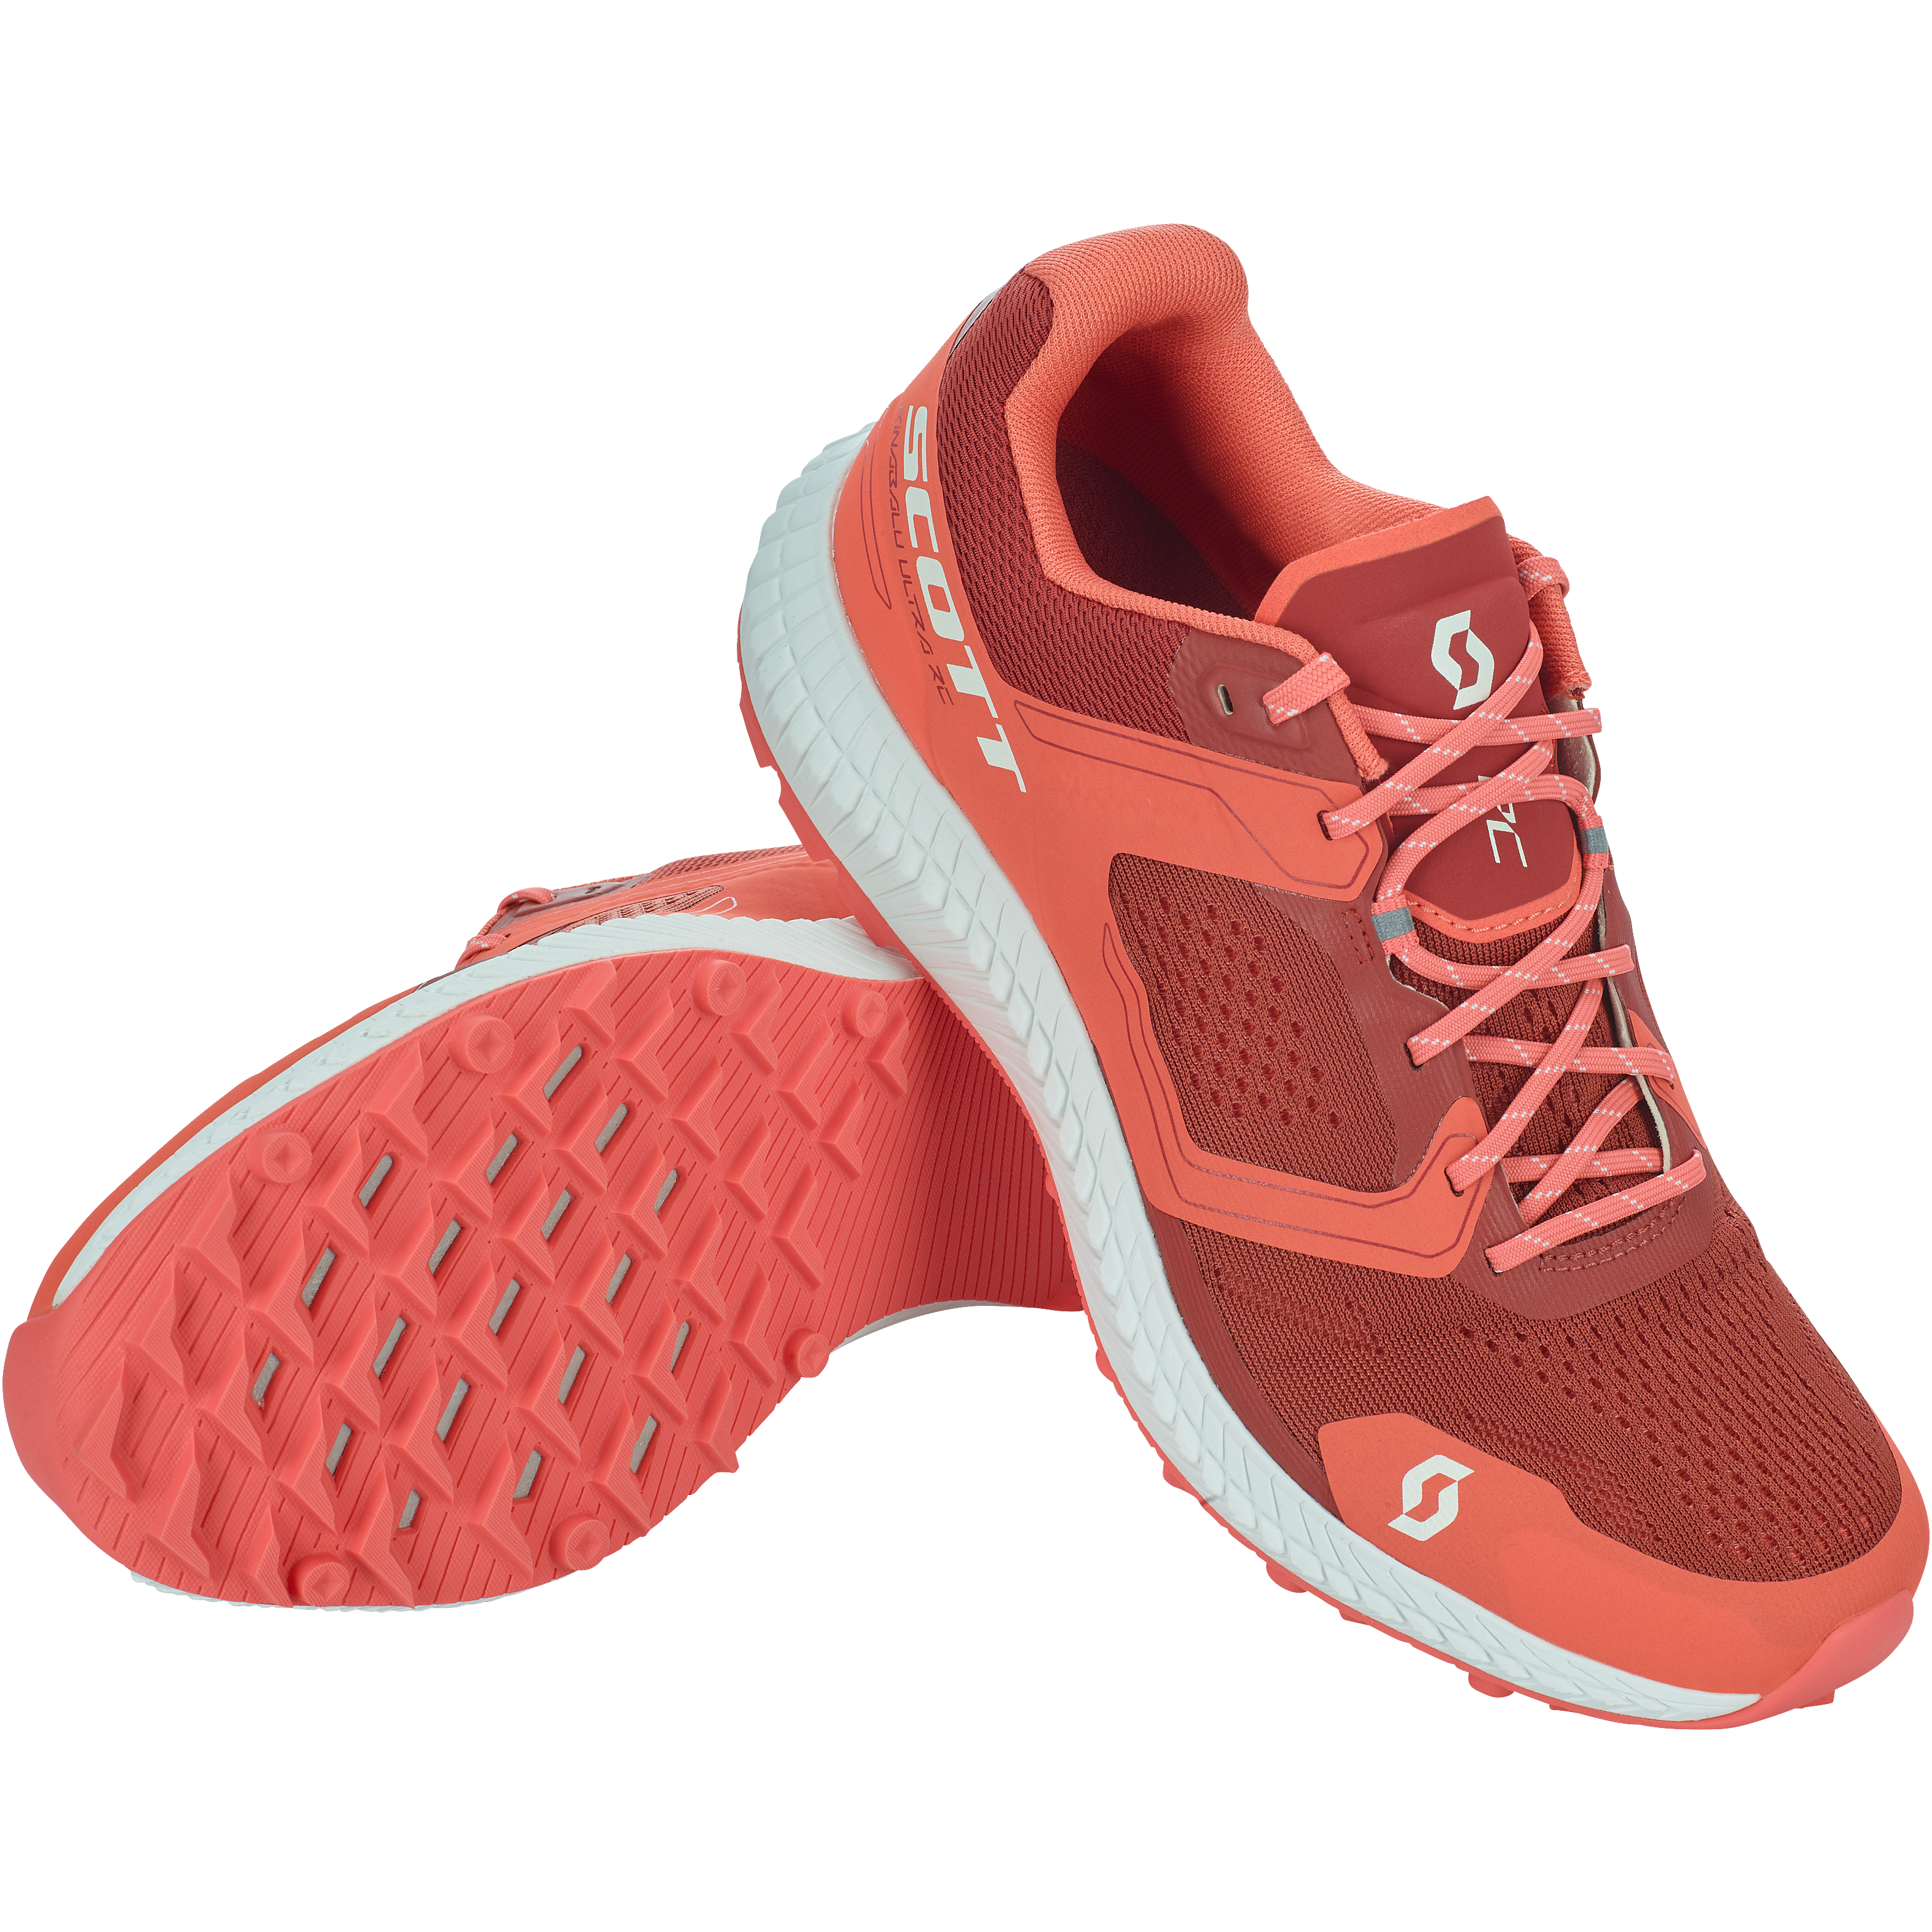 Scott Kinabalu Ultra RC Womens Trail Running Shoe